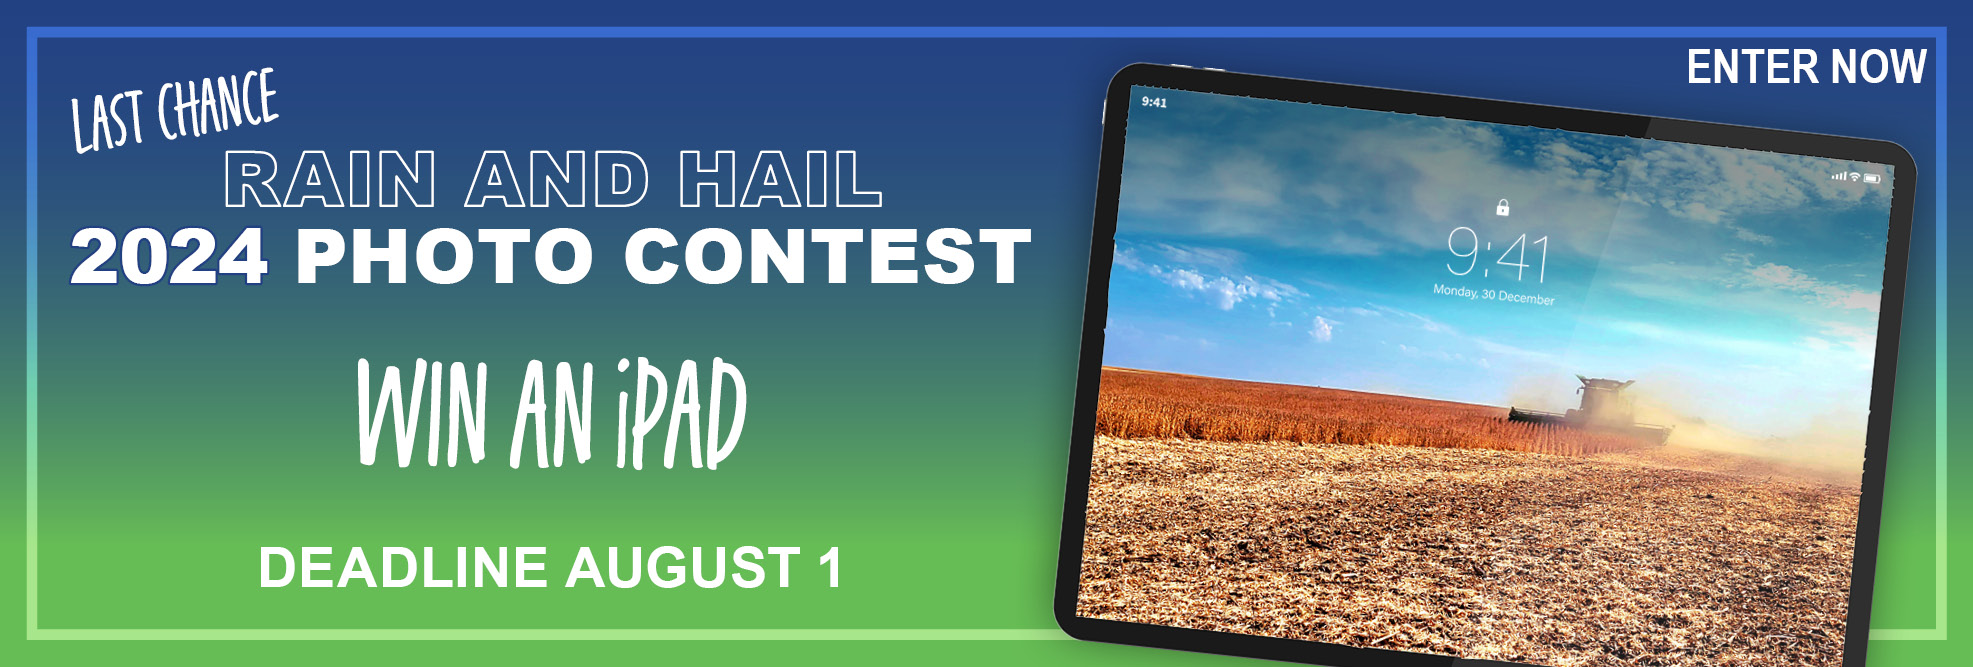 Last Chance - Rain and Hail's 2024 Photo Contest - Win an iPad! Deadline Aug 1